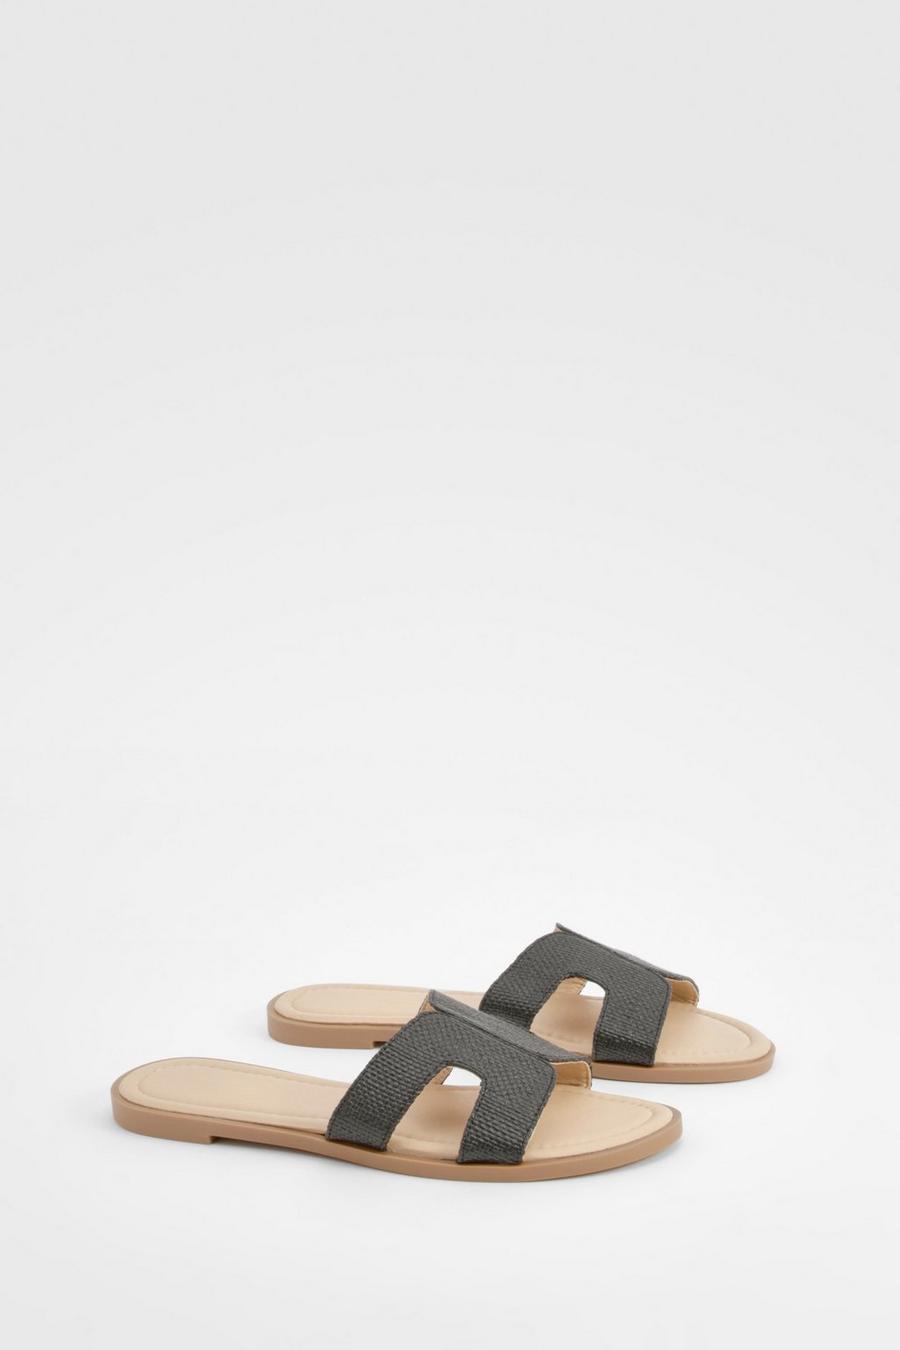 Bast-Sandalen mit doppelten Riemchen, Black